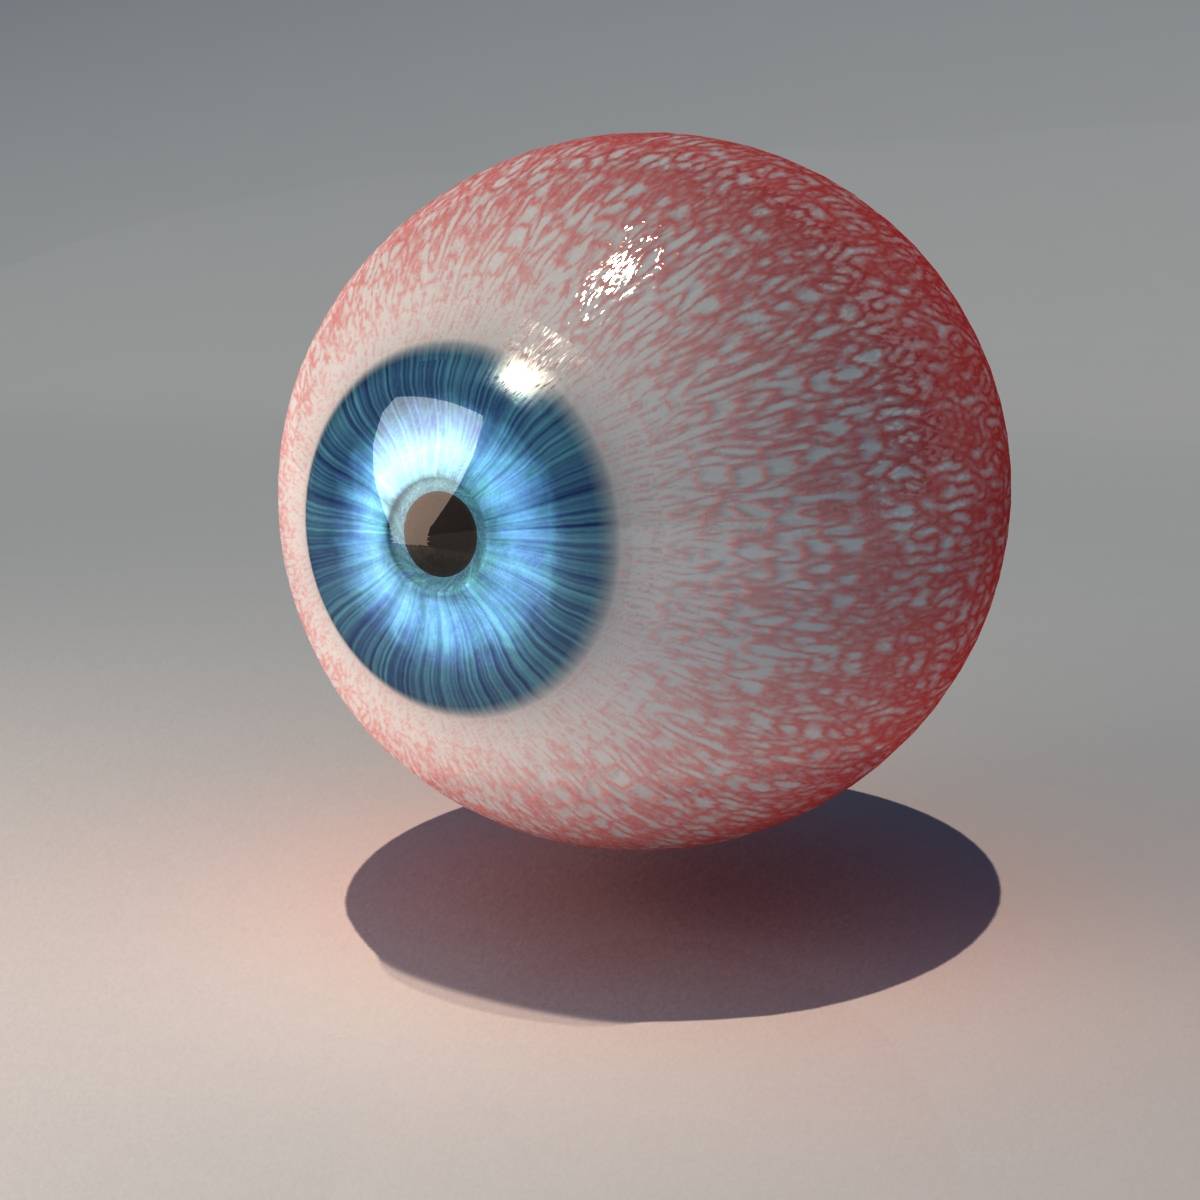 eye2